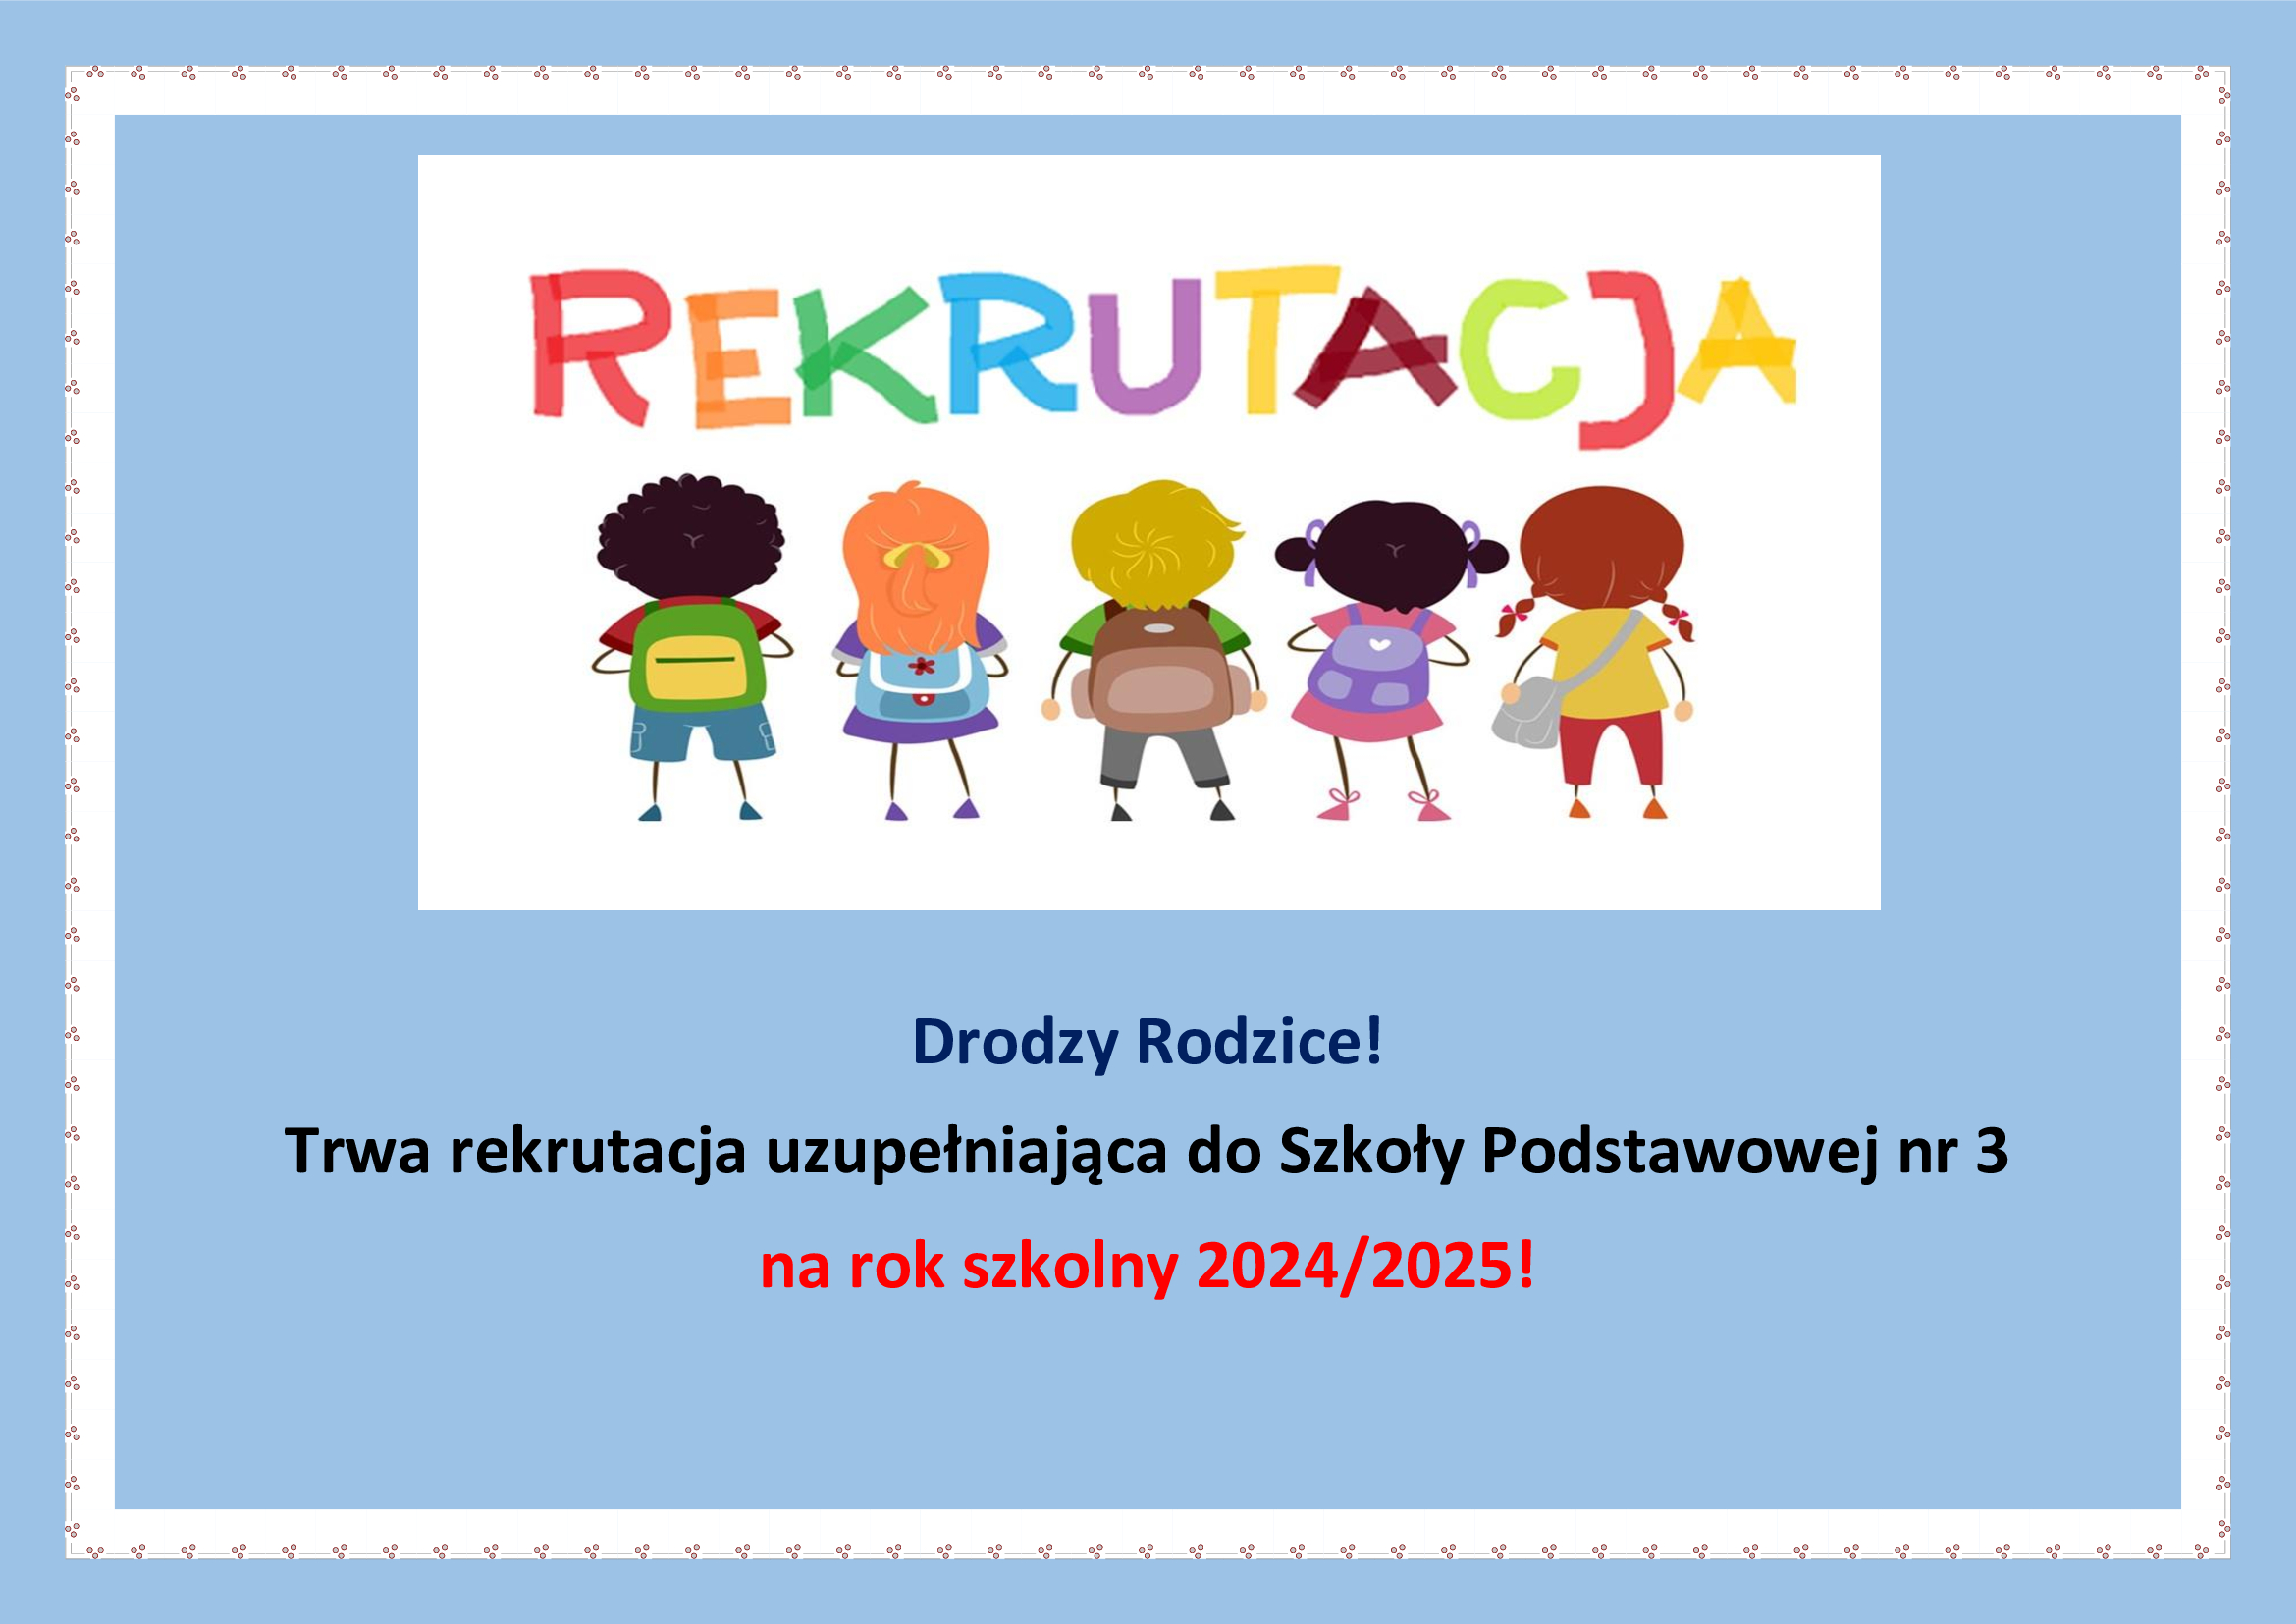 Rekrutacja uzupełniająca do Szkoły Podstawowej nr 3 w Bolesławcu na rok szkolny 2024/2025